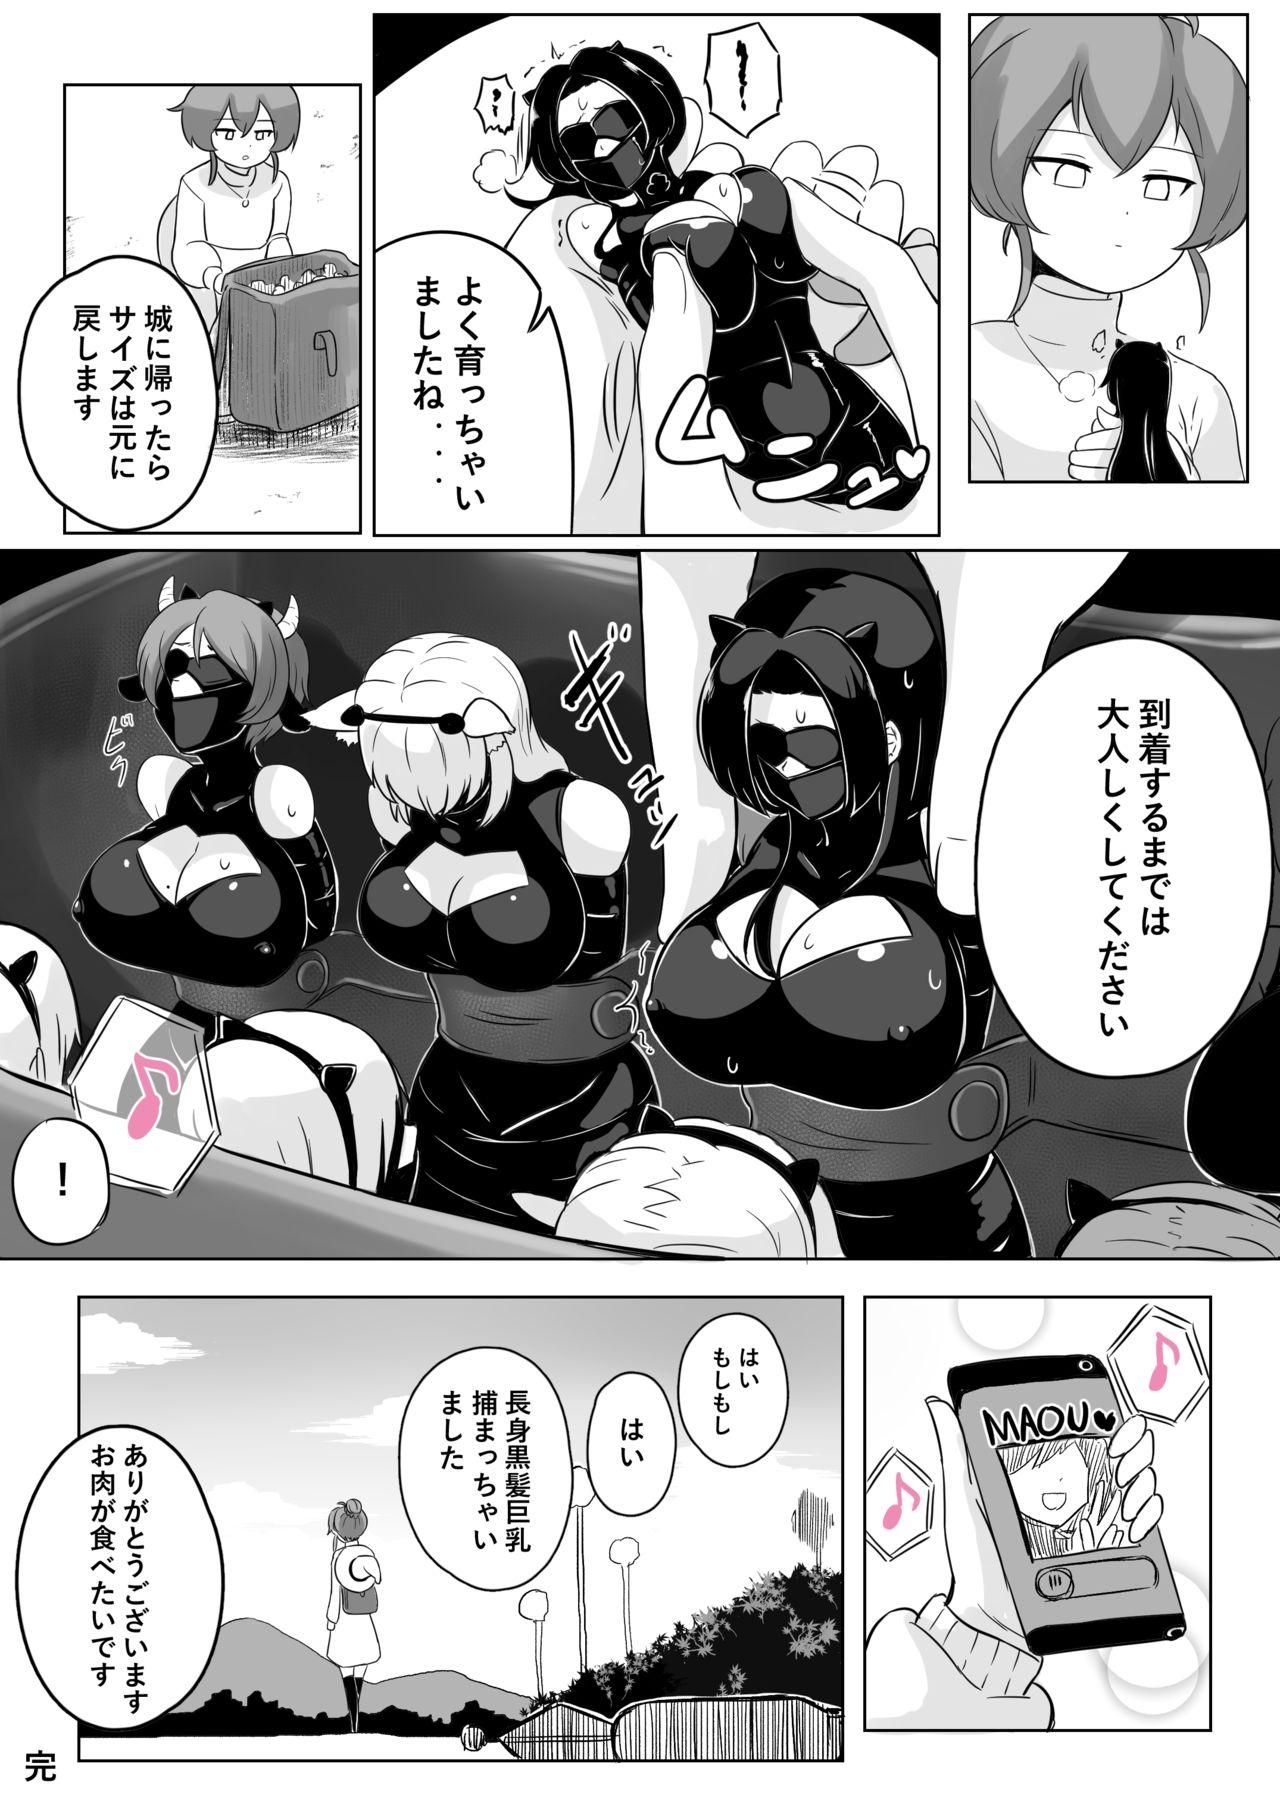 Ikedori Series 4 Page Manga 4